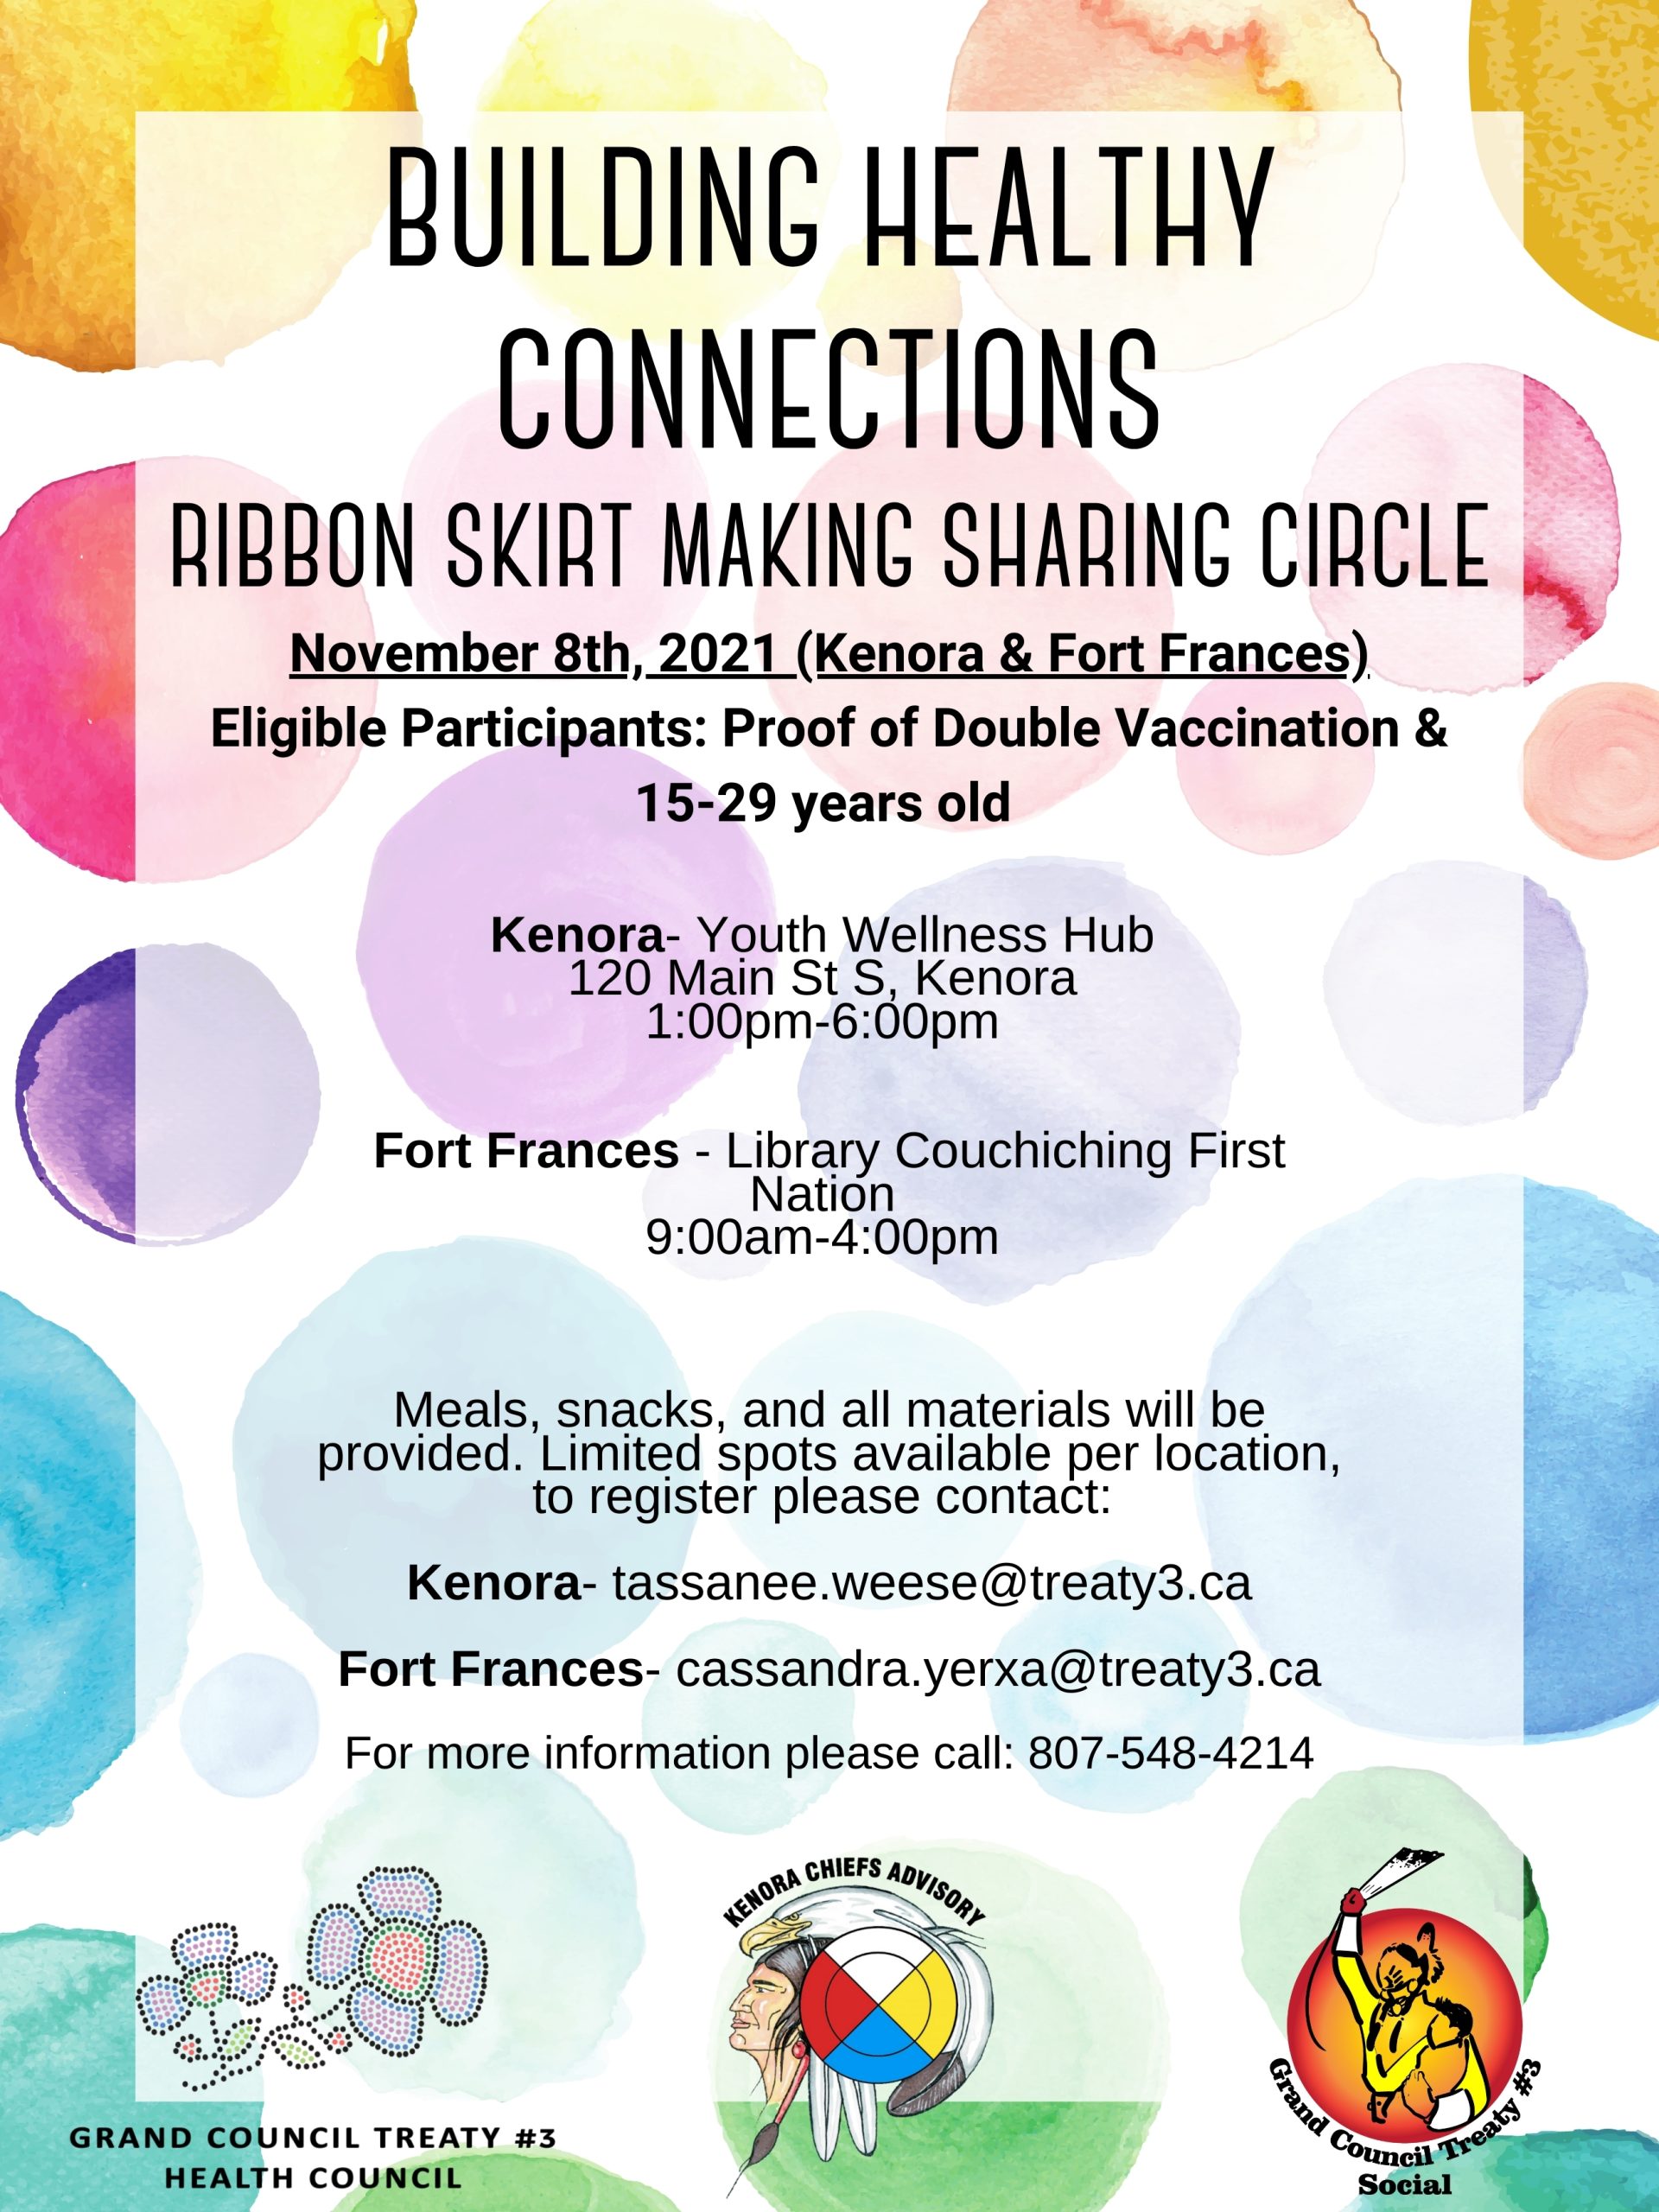 Ribbon Skirt Making Sharing Circle